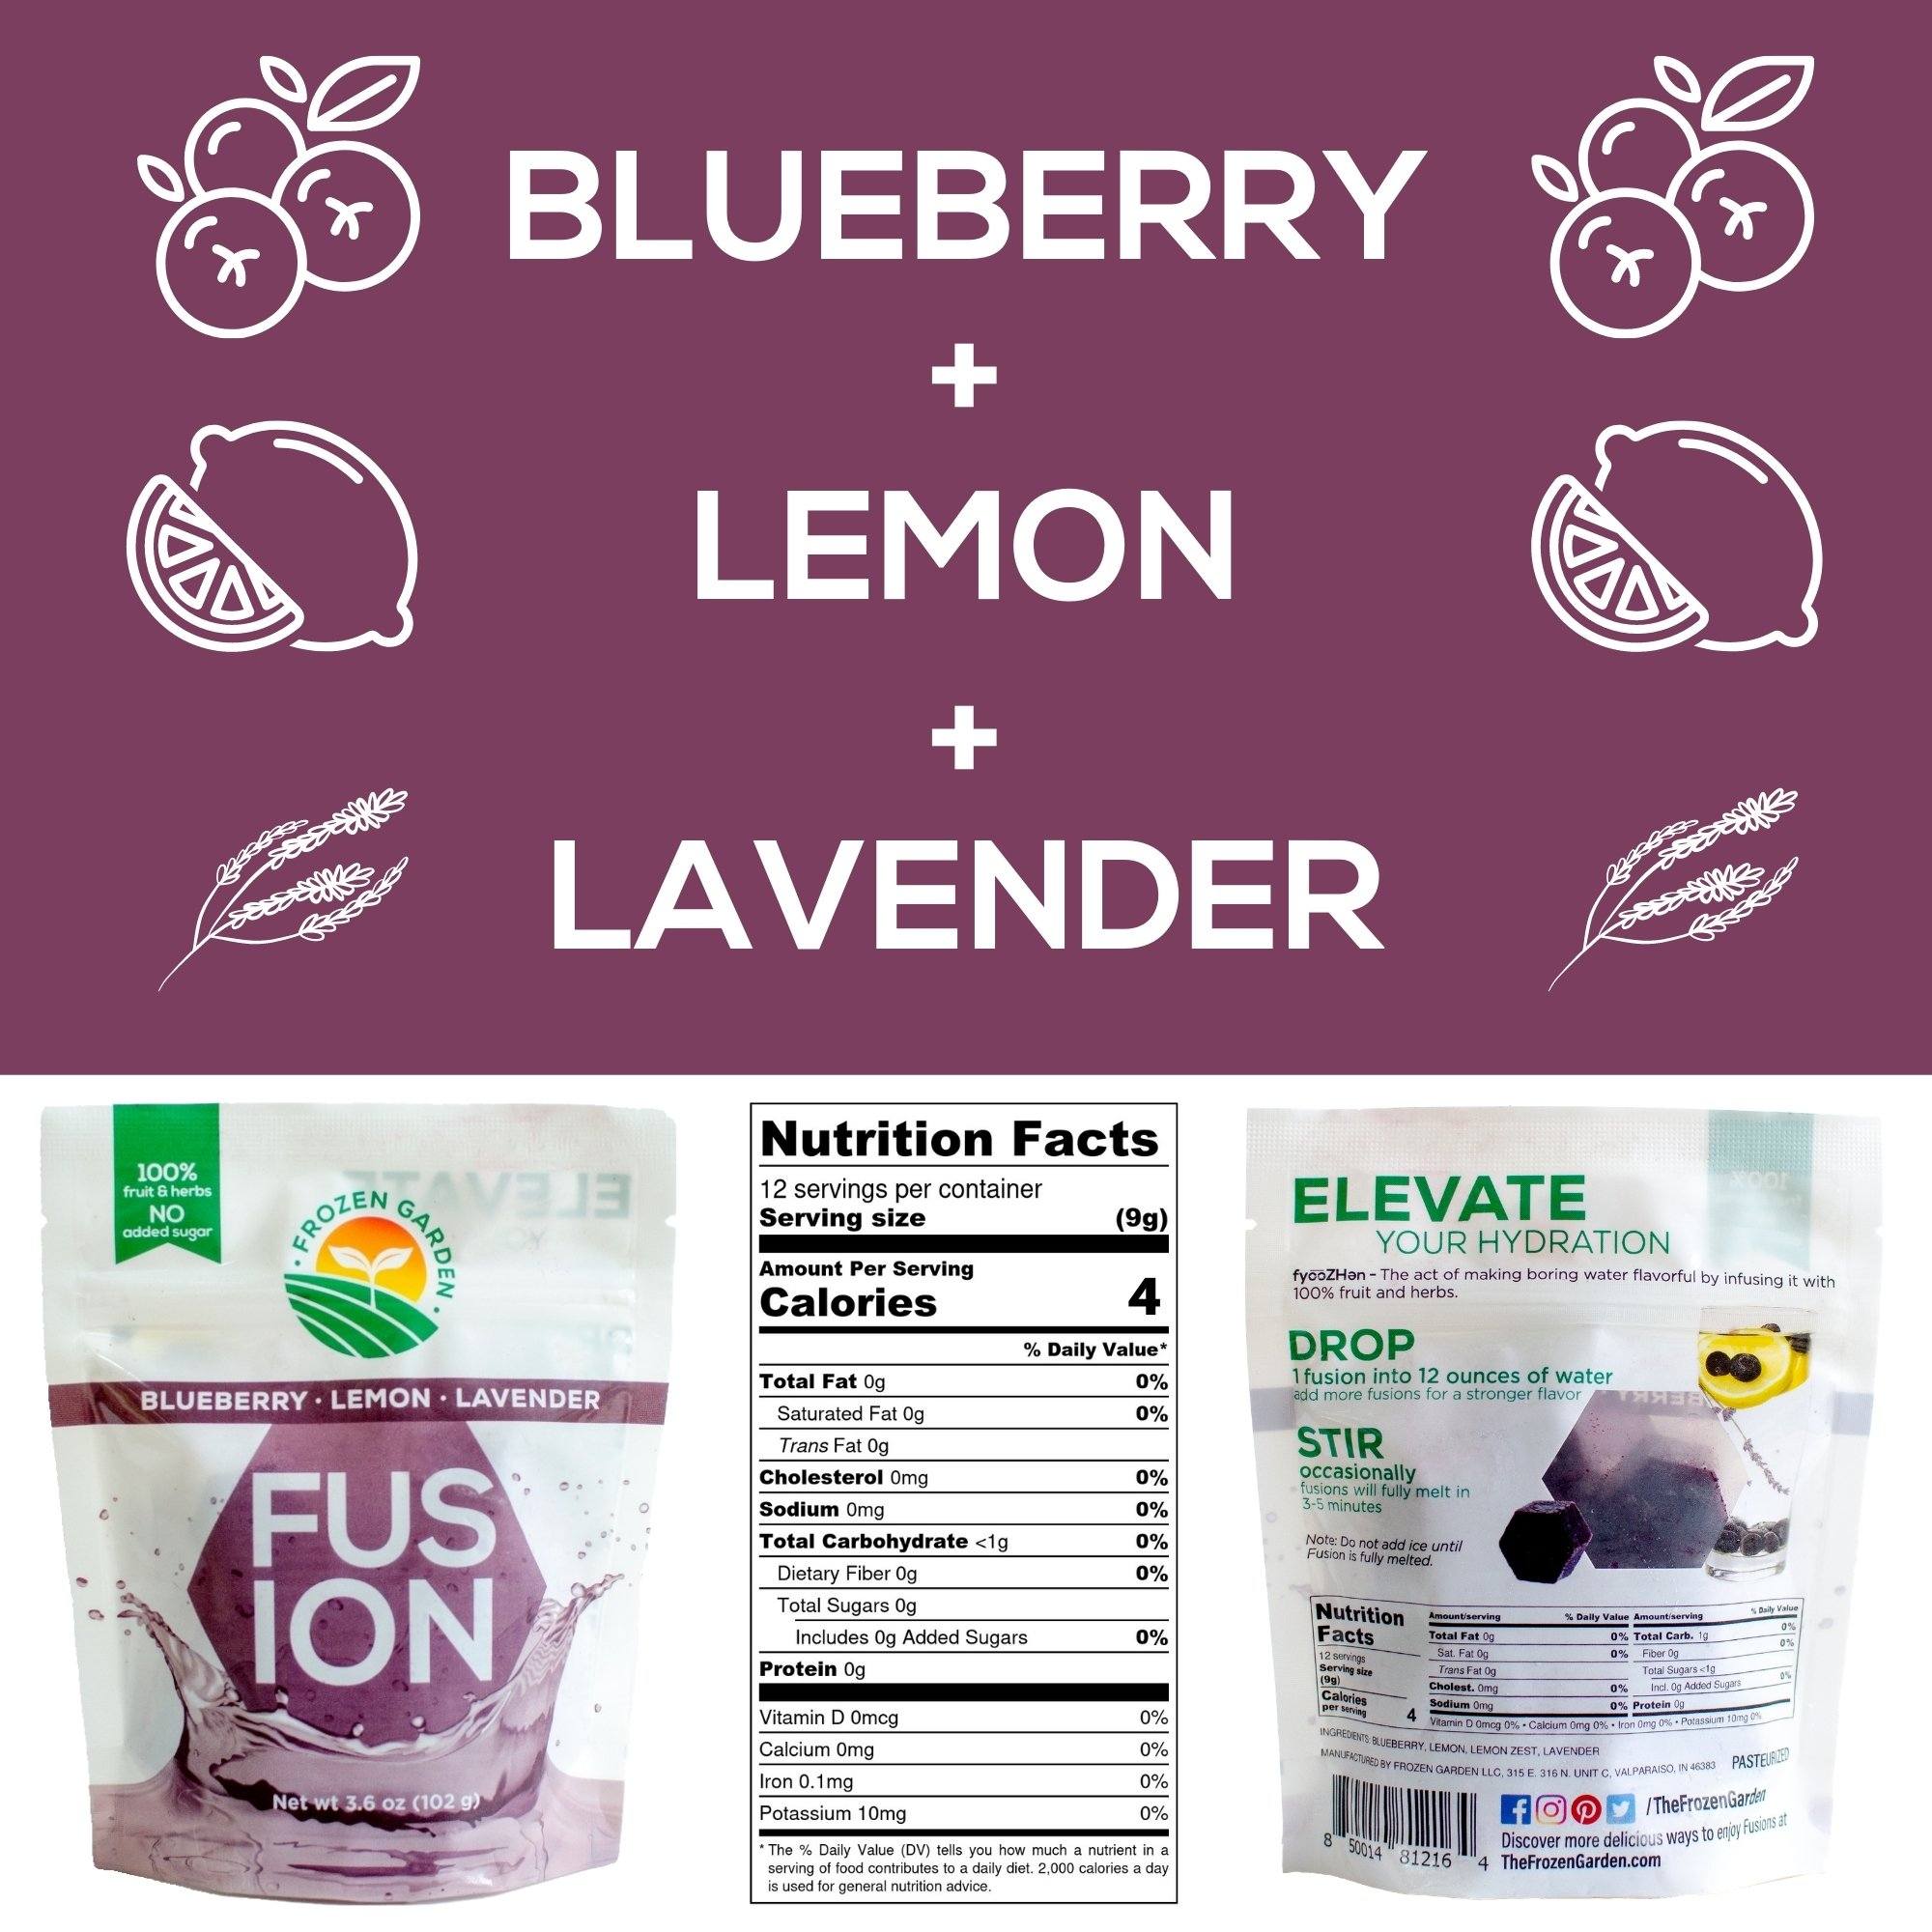 Blueberry + Lemon + Lavender